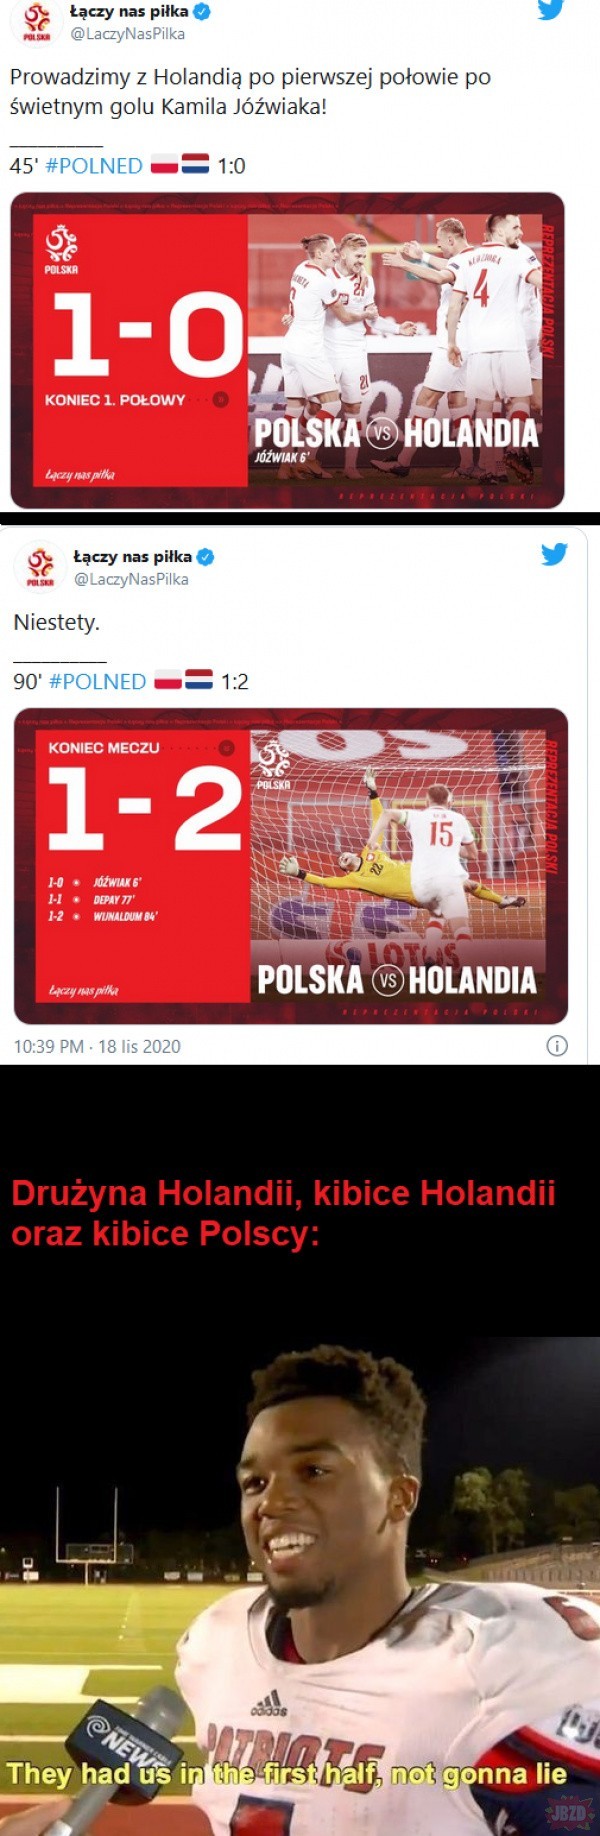 Memy po meczu Polska - Holandia (18.11.2020)